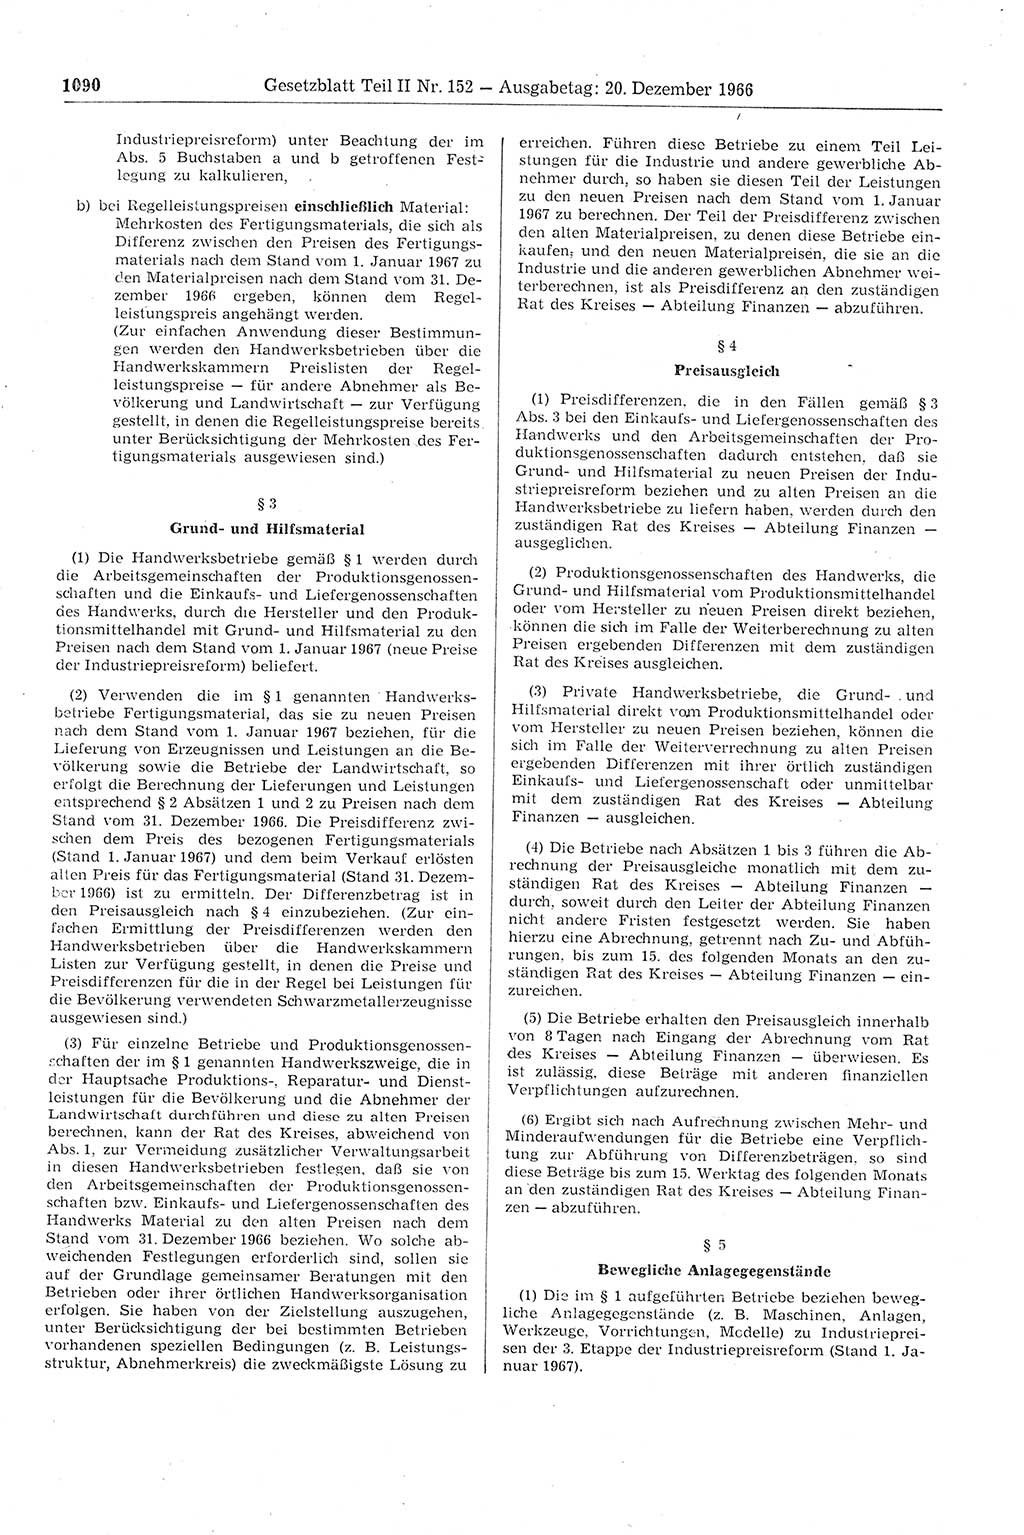 Gesetzblatt (GBl.) der Deutschen Demokratischen Republik (DDR) Teil ⅠⅠ 1966, Seite 1090 (GBl. DDR ⅠⅠ 1966, S. 1090)